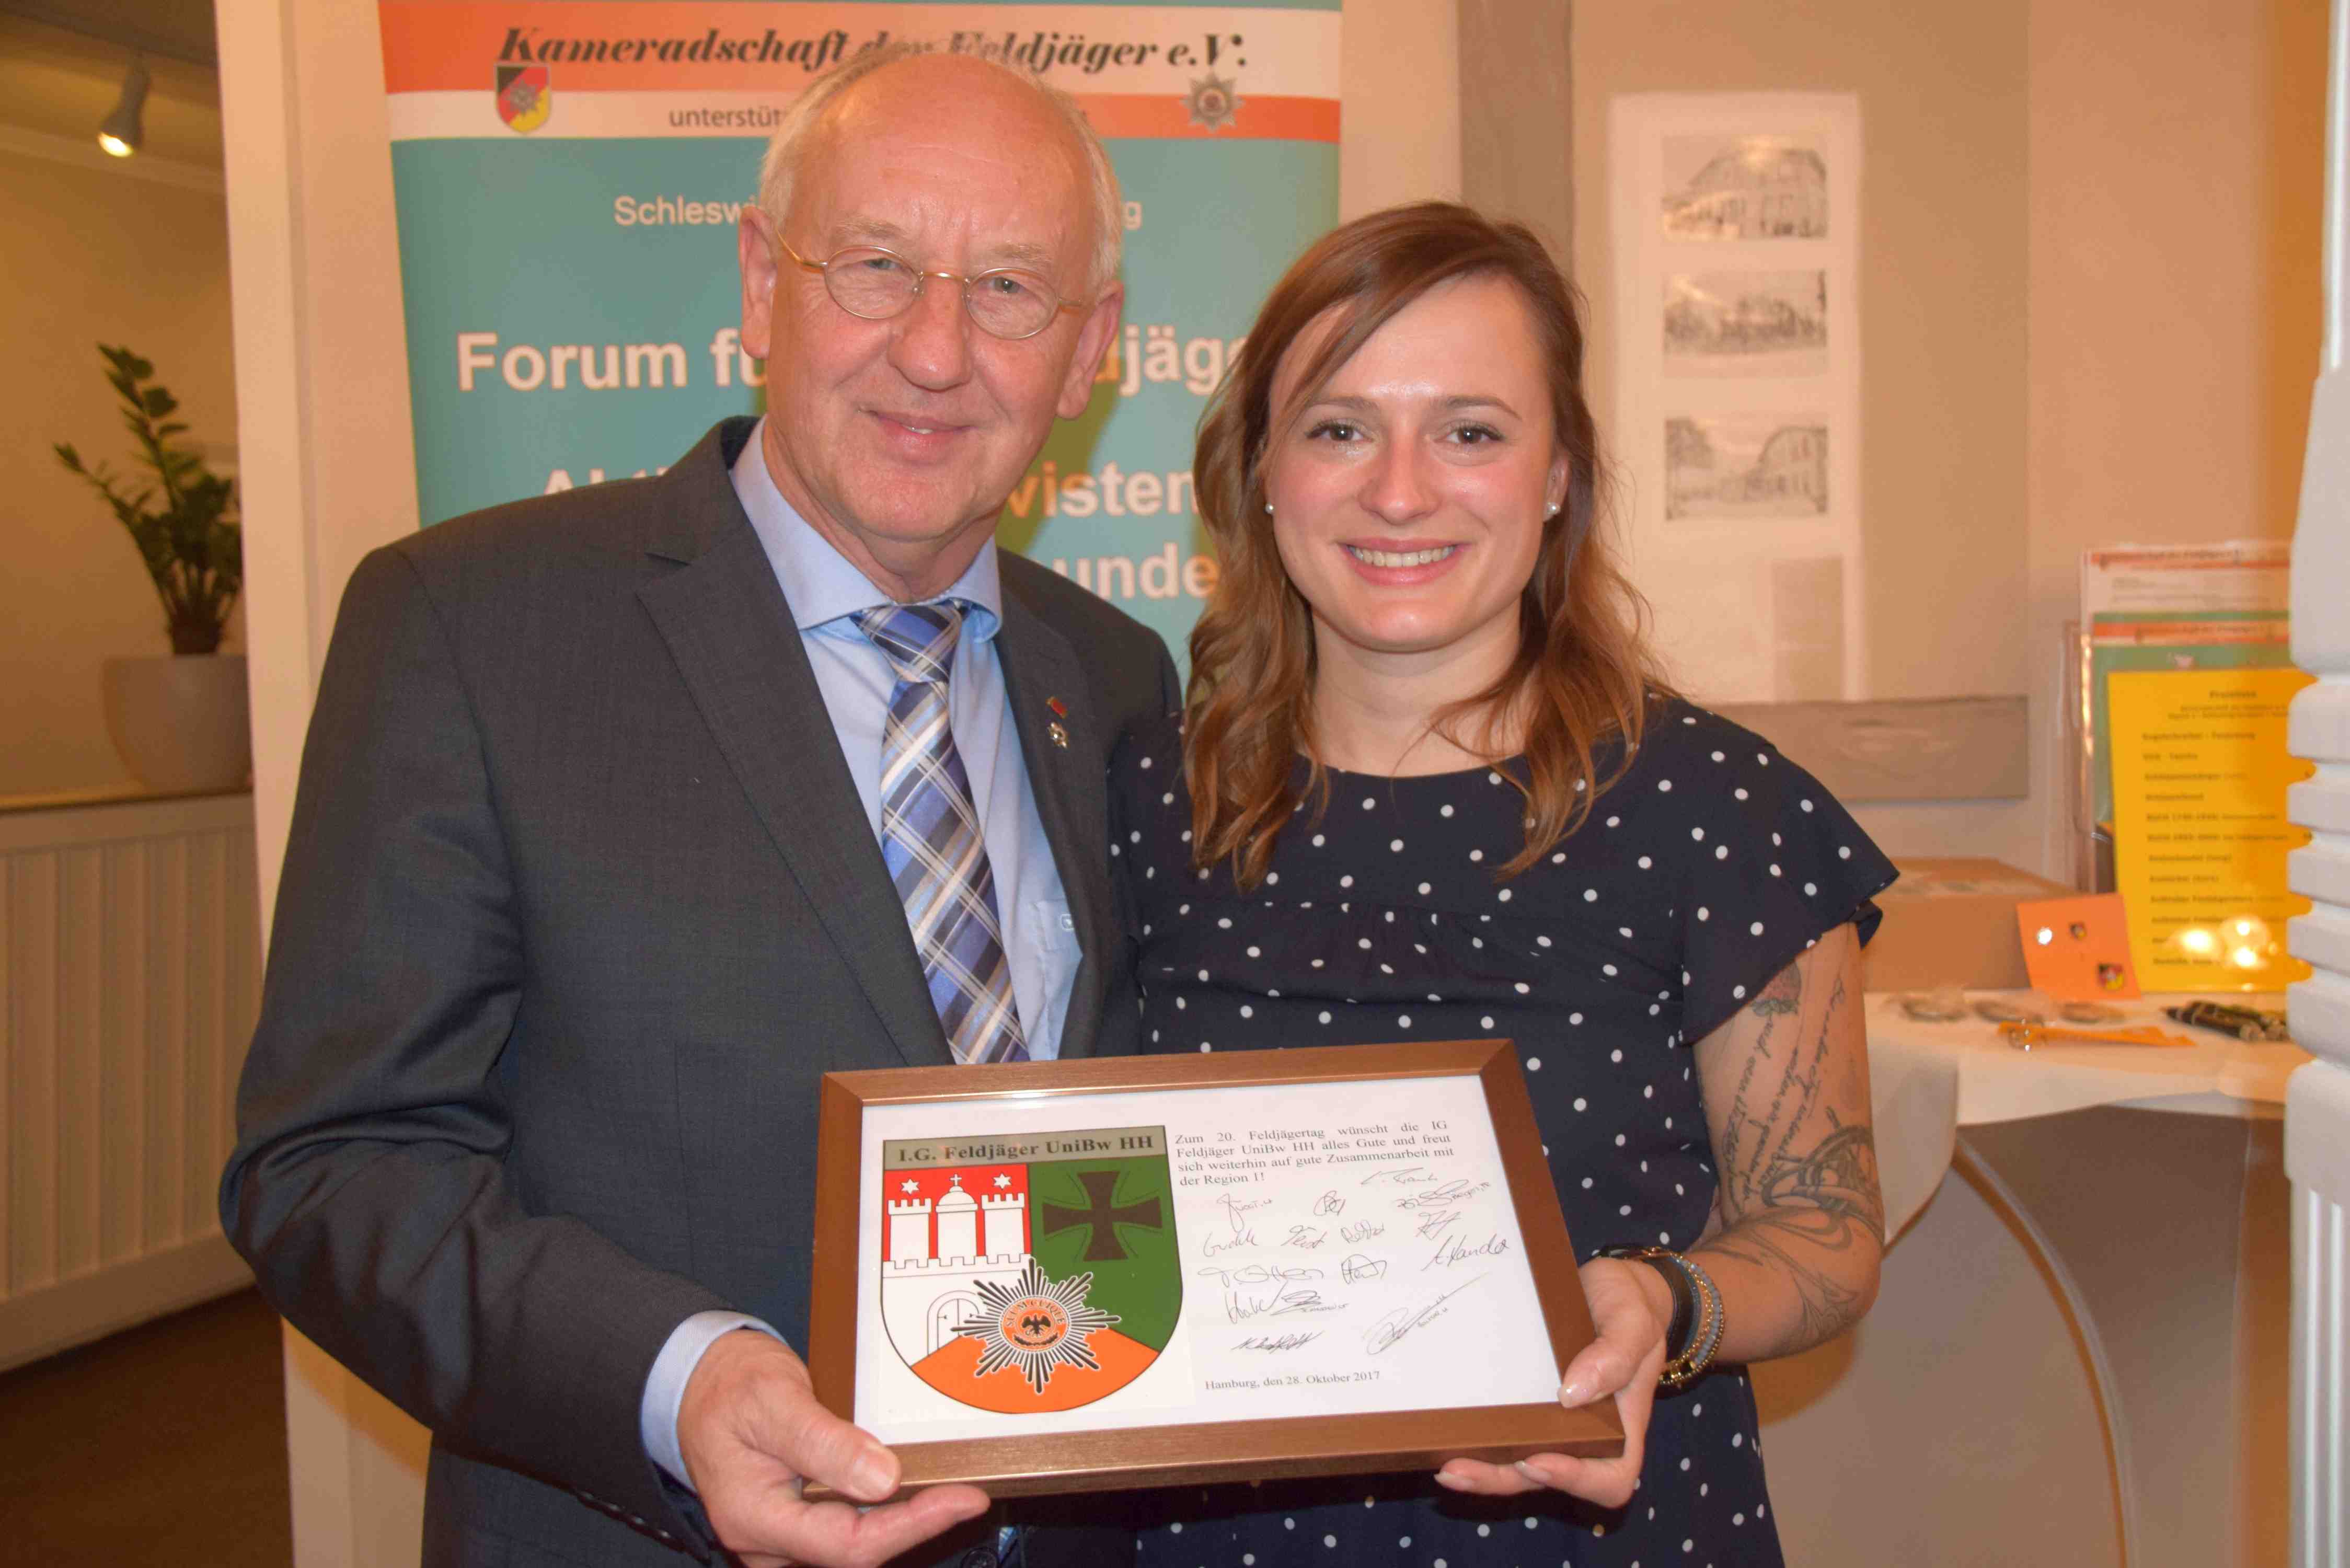 Isabel Biegerl überreicht dem Regionalleiter 1 eine Tafel mit Widmung und neuem Emblem ihrer "Interessengemeinschaft Feldjäger an der UniBw Hamburg"